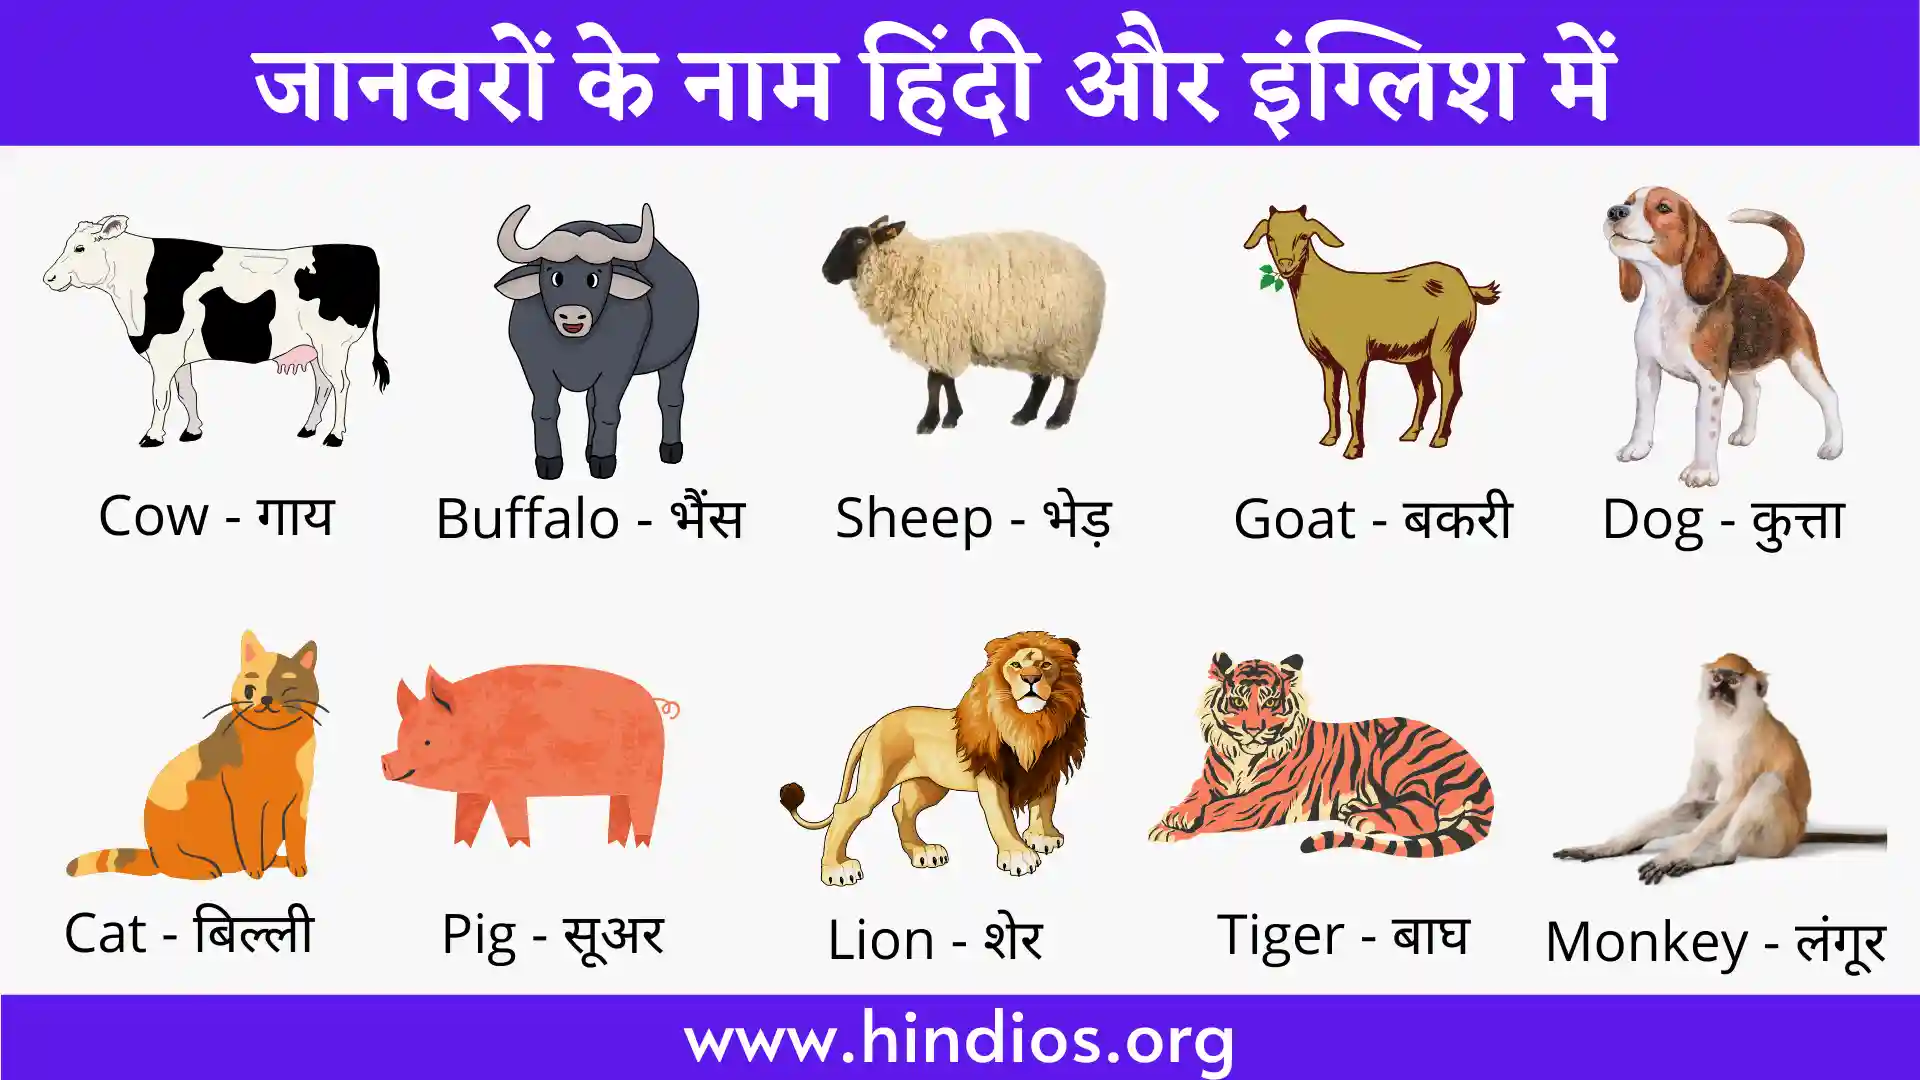 90+ Animals Name in Hindi and English| जानवरों के नाम हिंदी और इंग्लिश में »